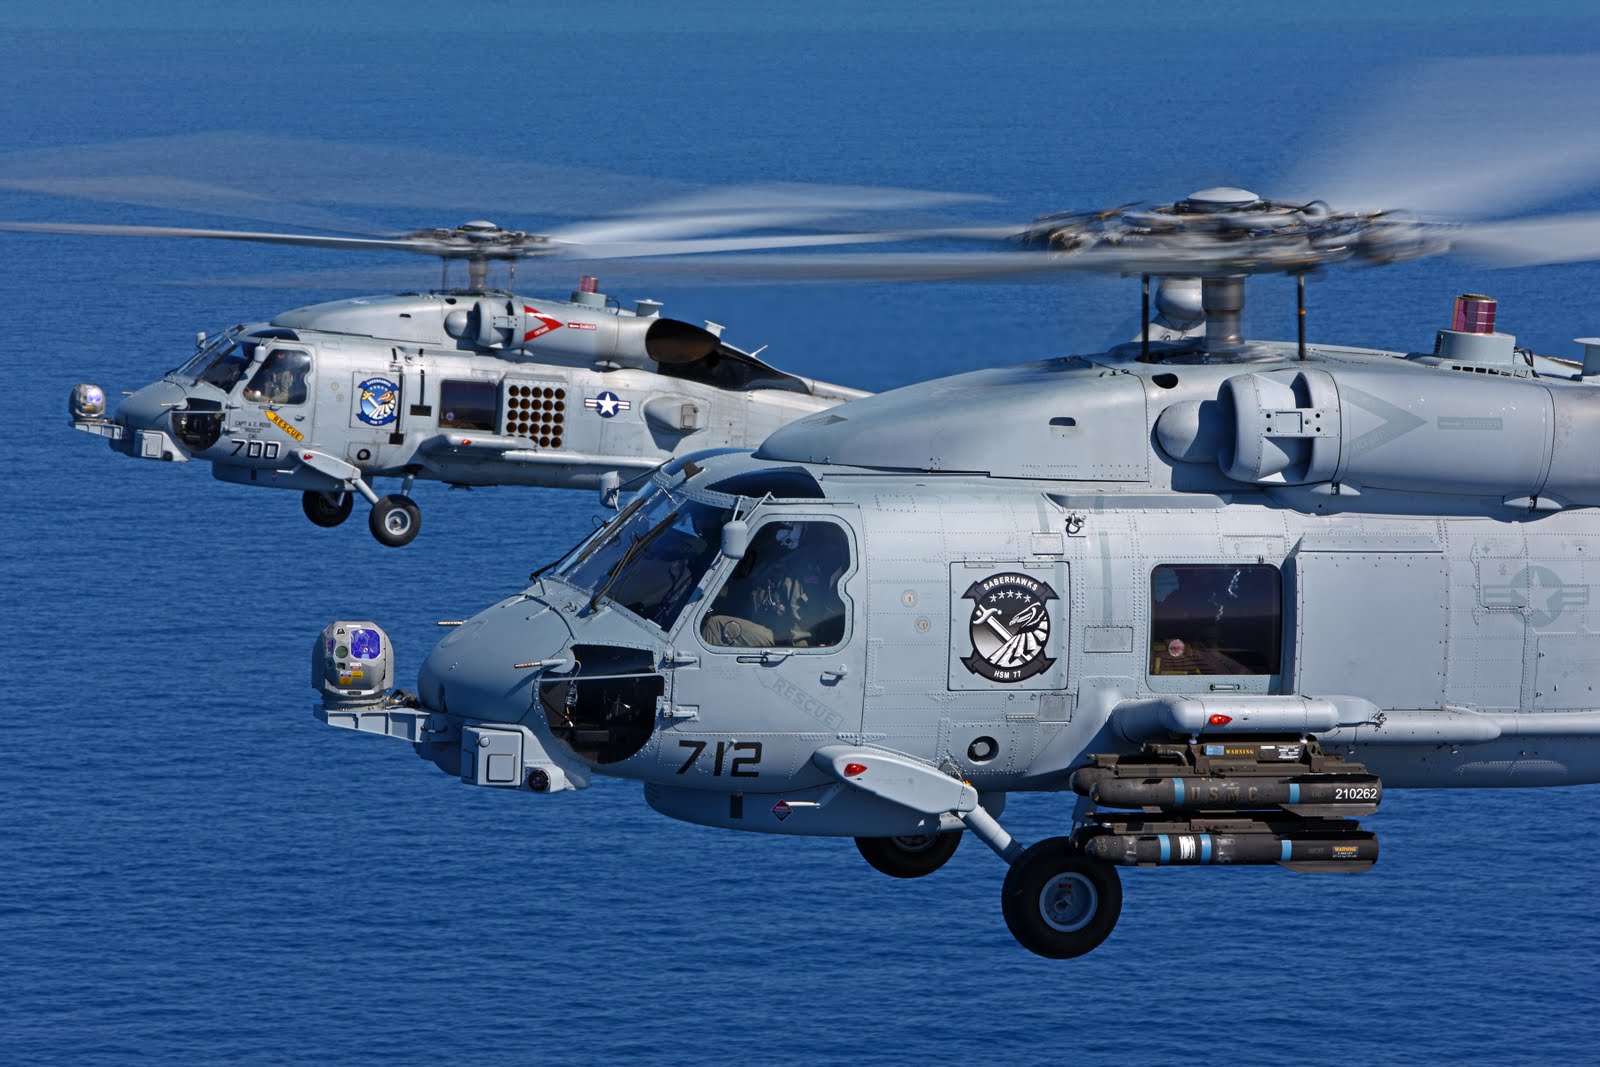 Αγορά ελικοπτέρων MH-60R: Είναι δυνατόν το ΥΠΕΘΑ να θεωρεί ένα τέτοιο πρόγραμμα ως εξοπλιστική προτεραιότητα;